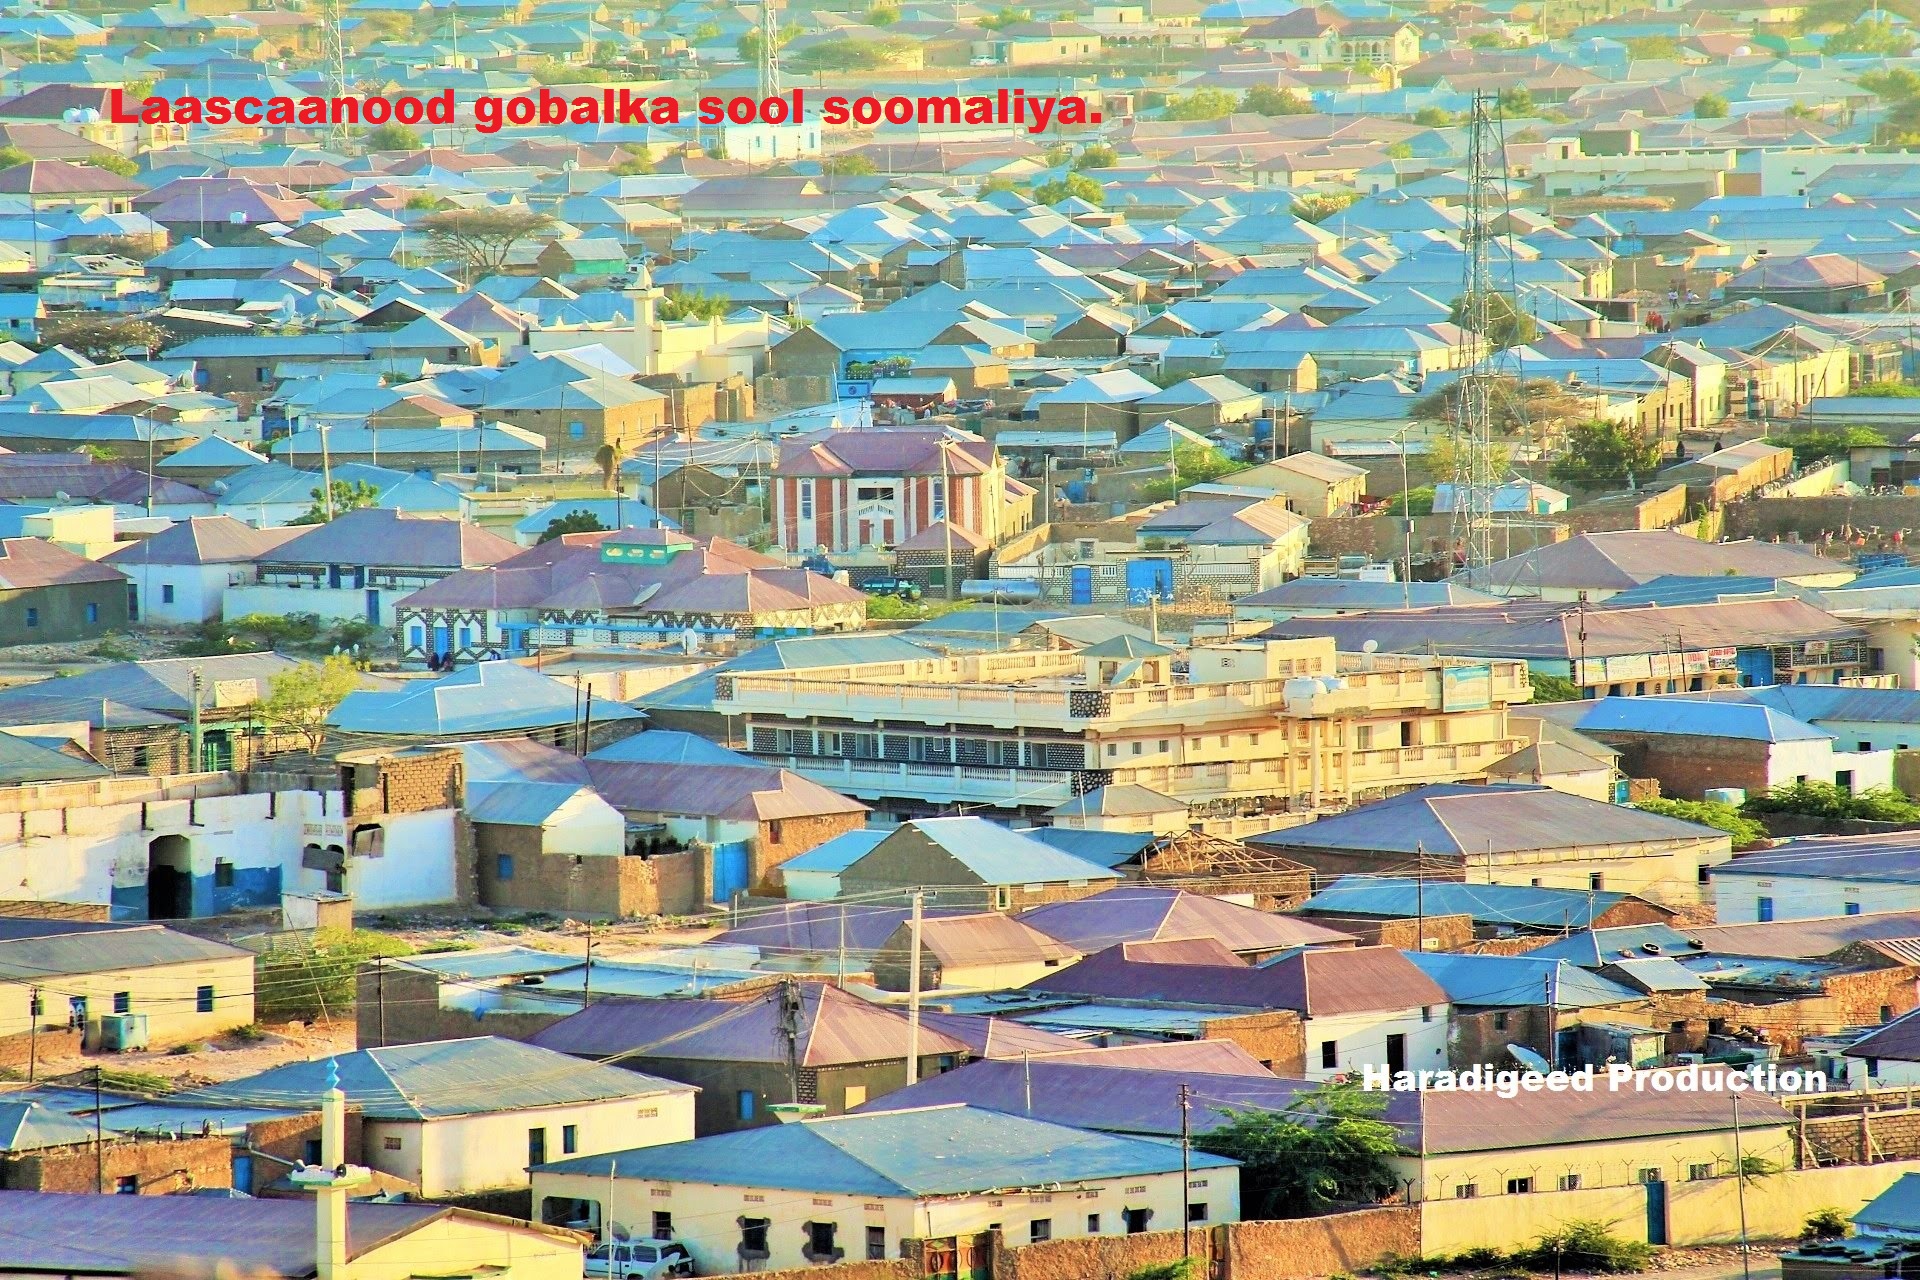 Guddoomiyaha gobolka Sool ee Somaliland oo qiray Colaadda Dhumay inay qayb ka yihiin ciidamo mushaar kaqaata Somaliland (daawo)